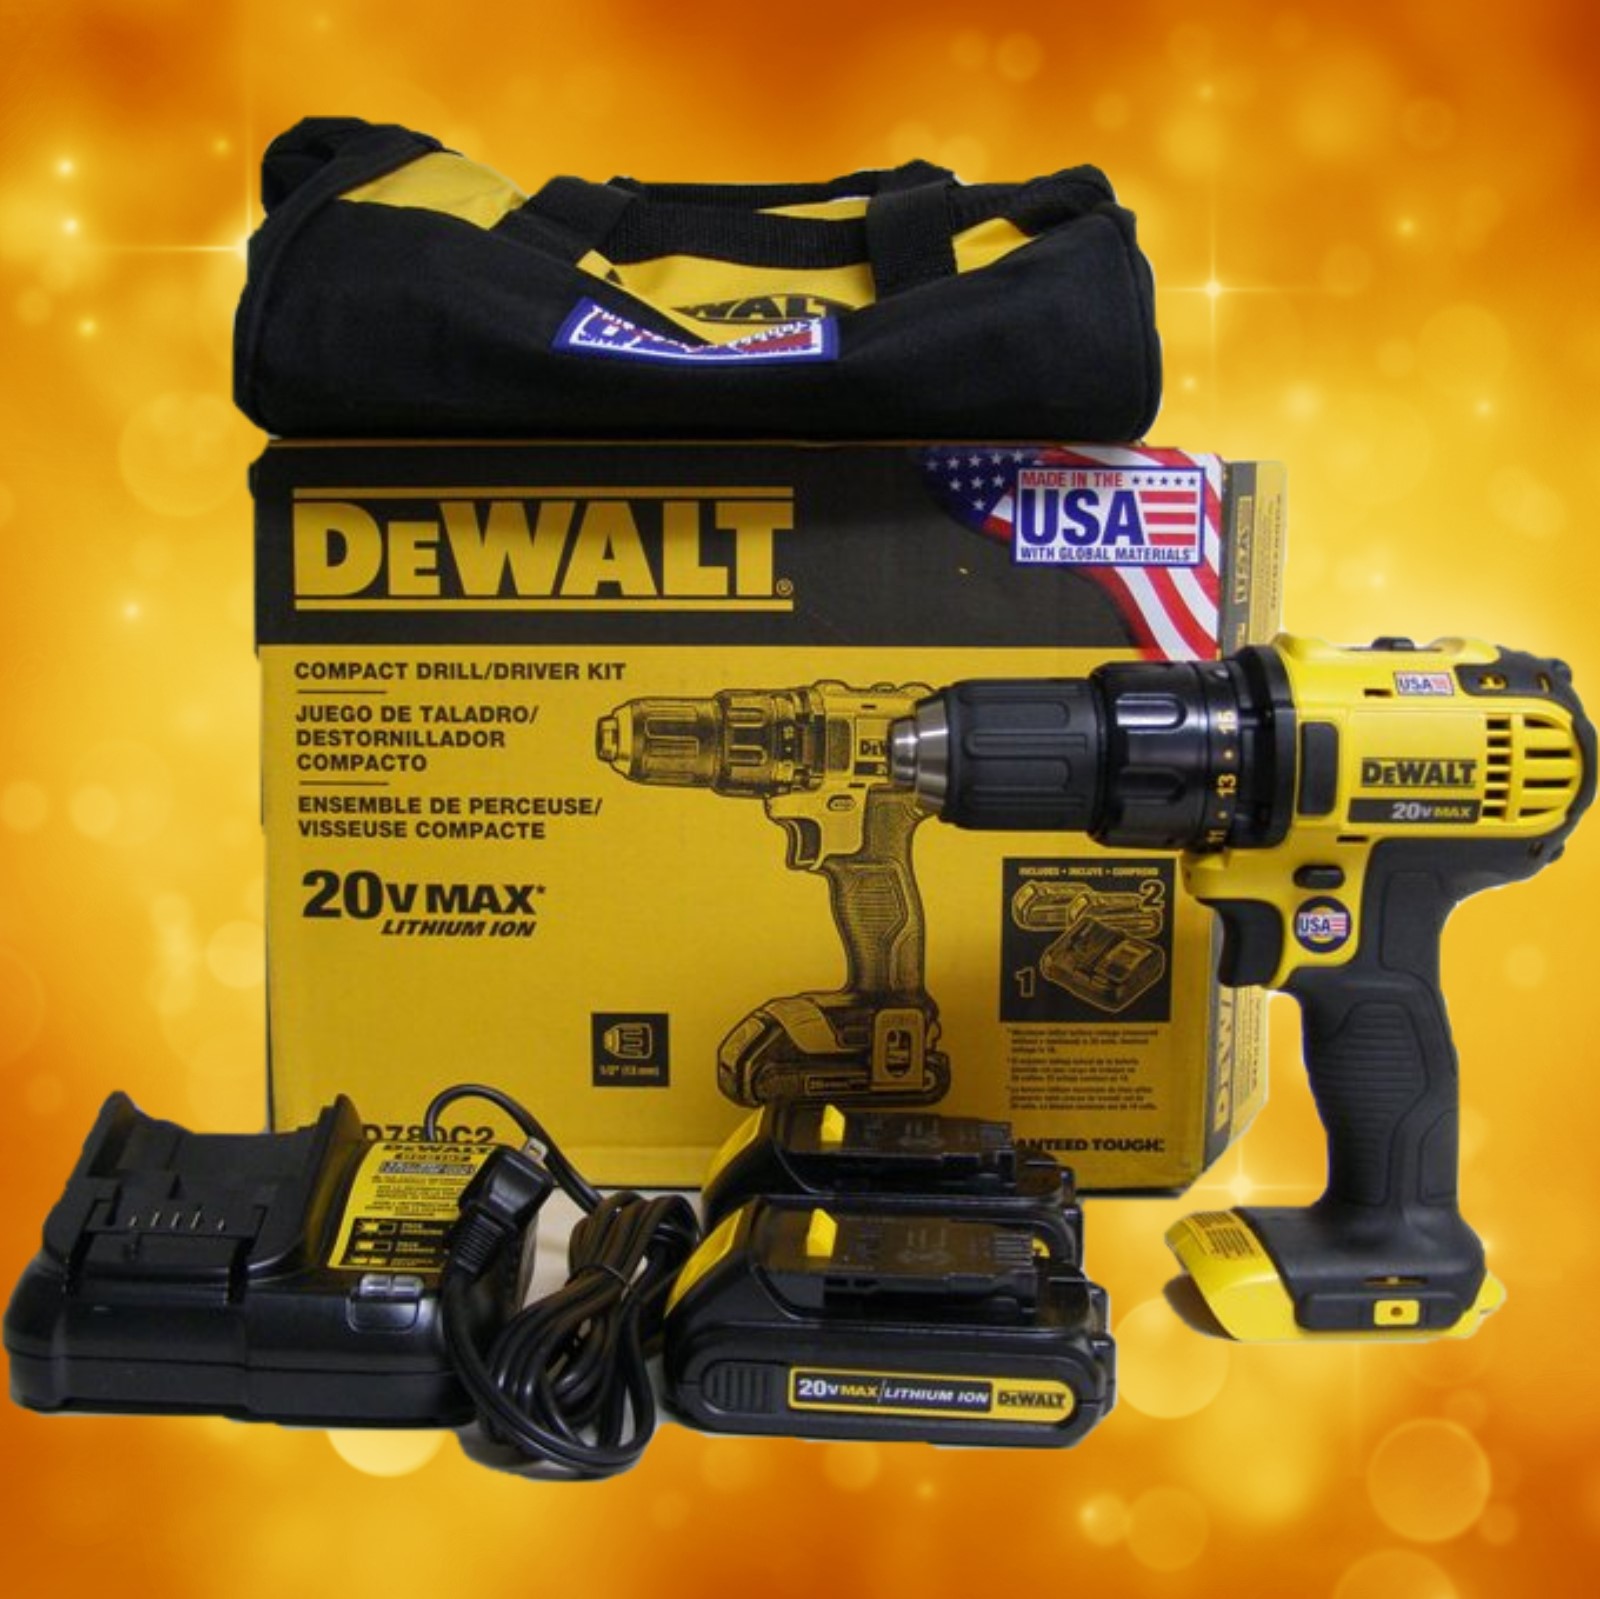 Dewalt DCD780C2 20V Compact Drill Kit for sale online